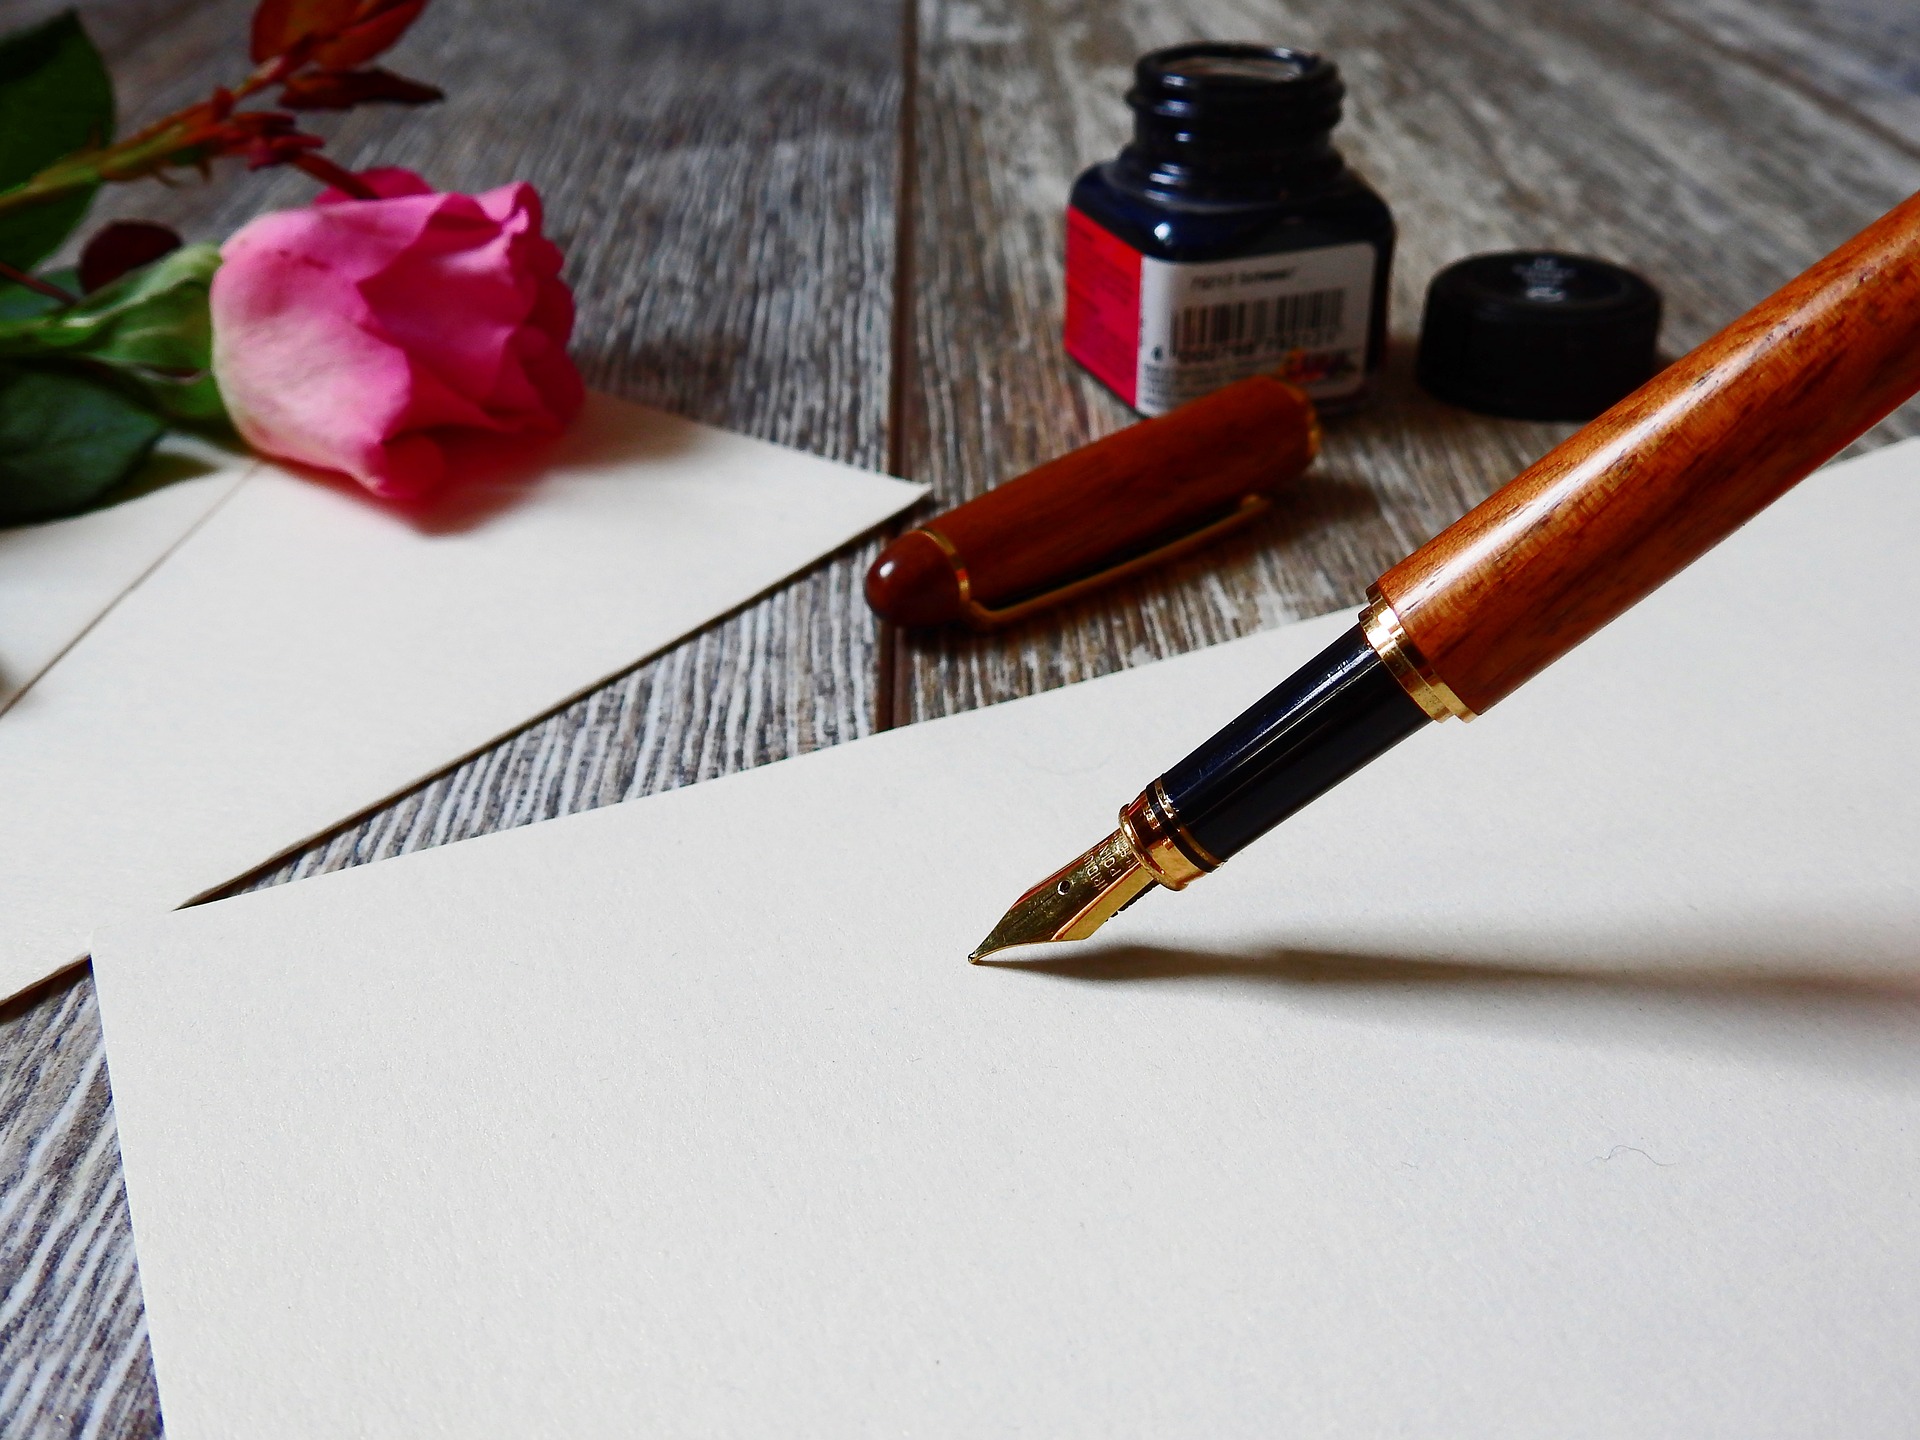 imagen de un estilógrafo sobre una hoja de papel pergamino en blanco, un frasco de tinta y una flor